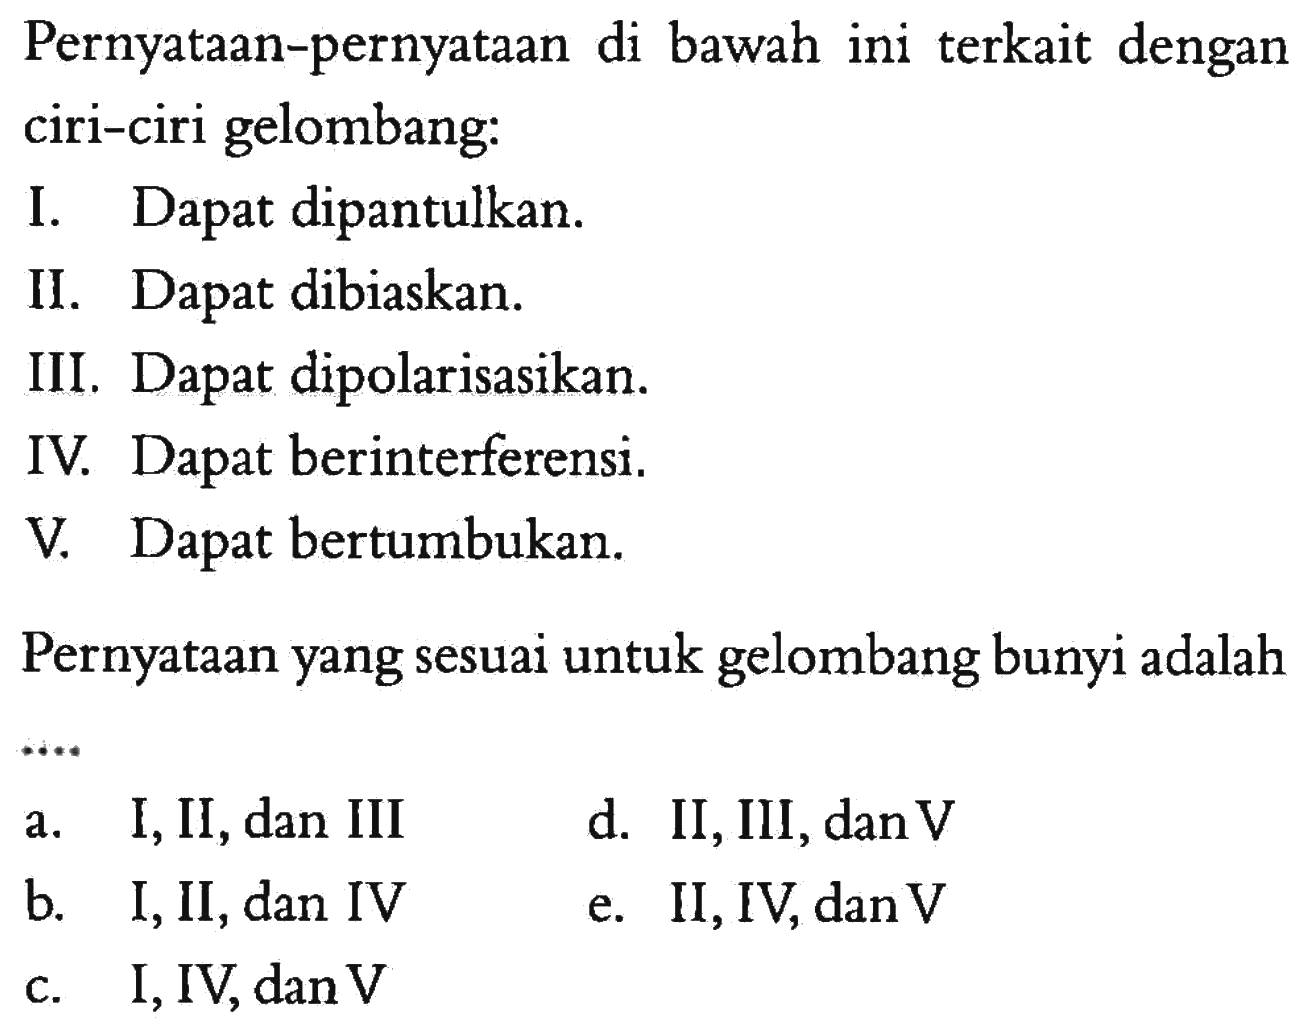 Pernyataan-pernyataan di bawah ini terkait dengan ciri-ciri gelombang:I. Dapat dipantulkan.II. Dapat dibiaskan.III. Dapat dipolarisasikan.IV. Dapat berinterferensi.V. Dapat bertumbukan.Pernyataan yang sesuai untuk gelombang bunyi adalaha. I, II, dan III b. I, II, dan IV c. I, IV, dan V d. II, III, dan V e. II, IV, dan V 